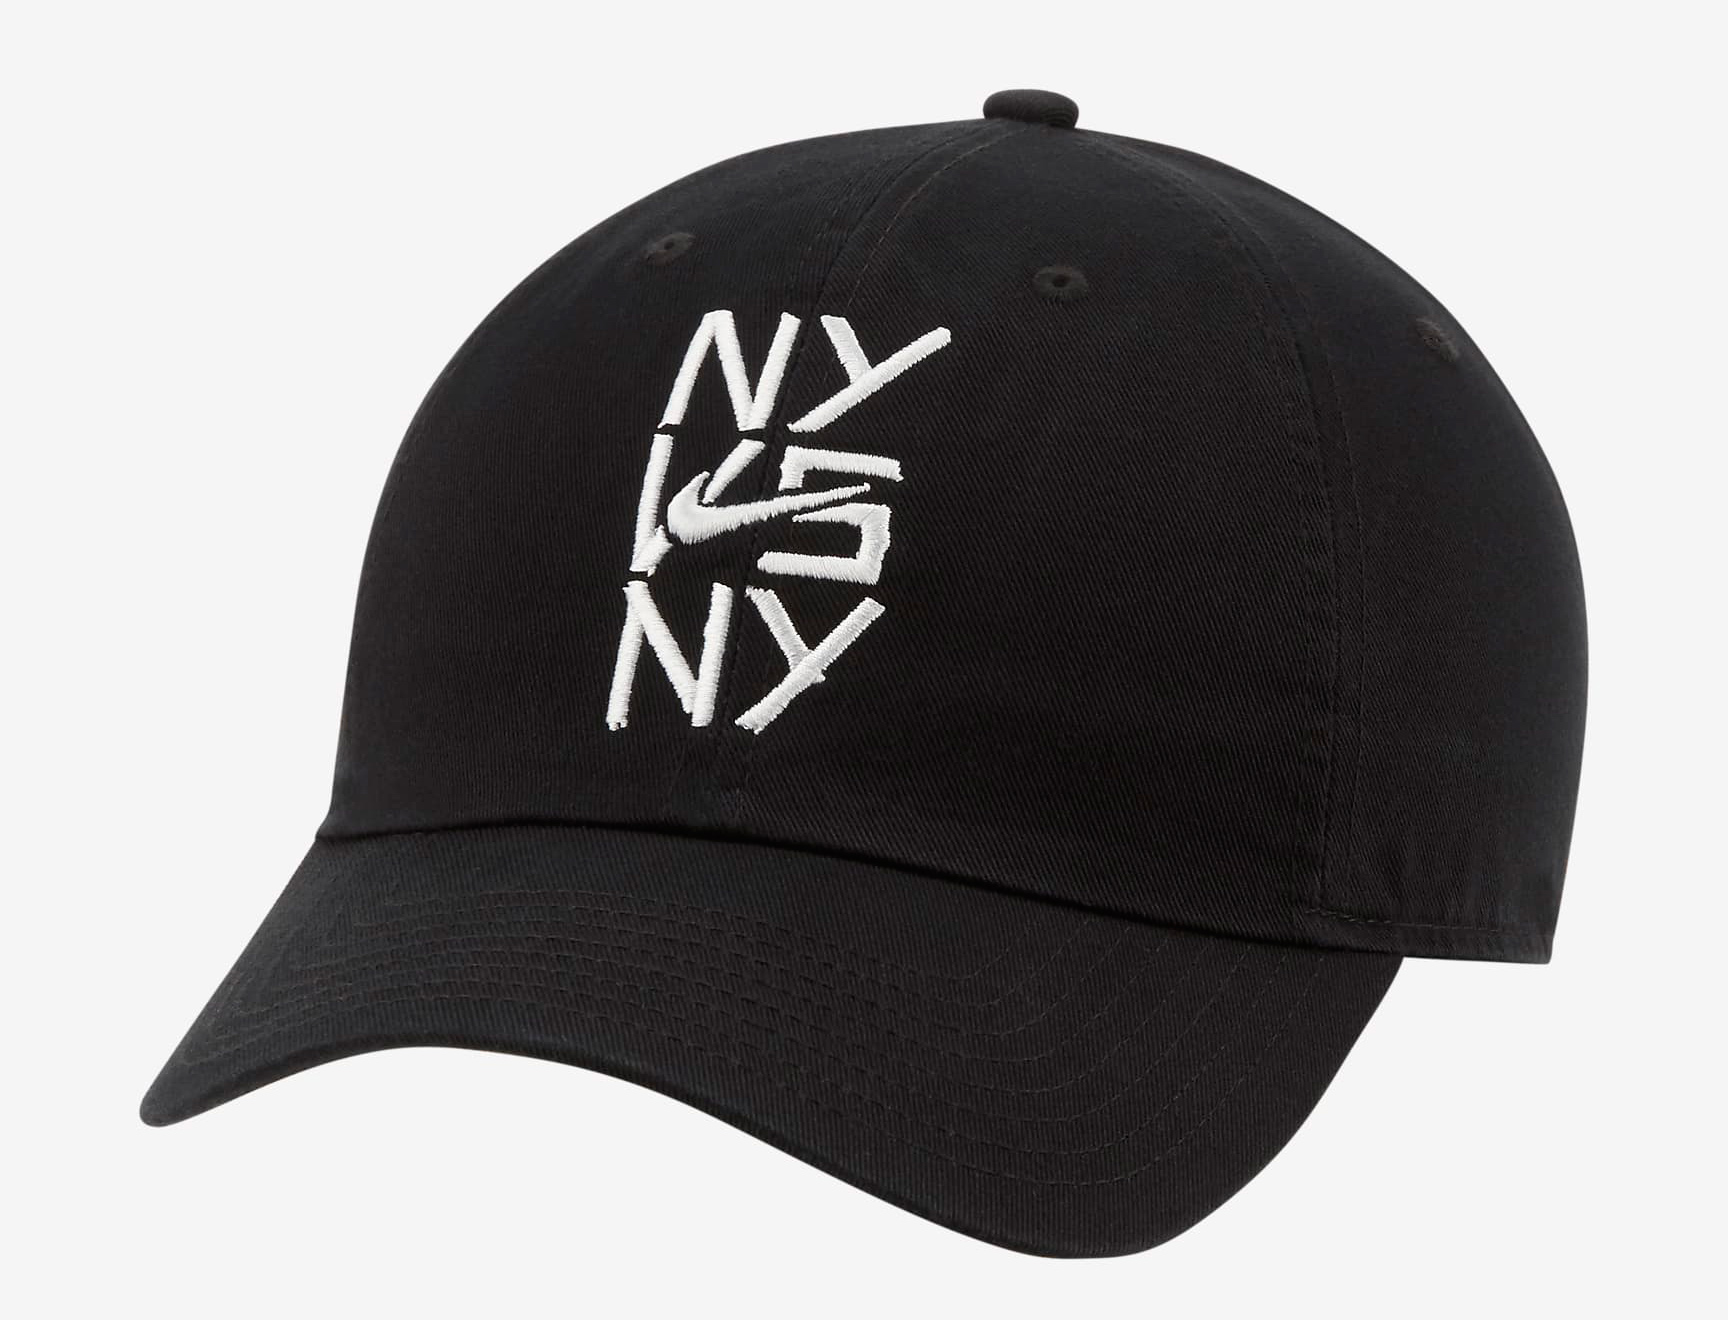 nike-ny-vs-ny-black-hat-1